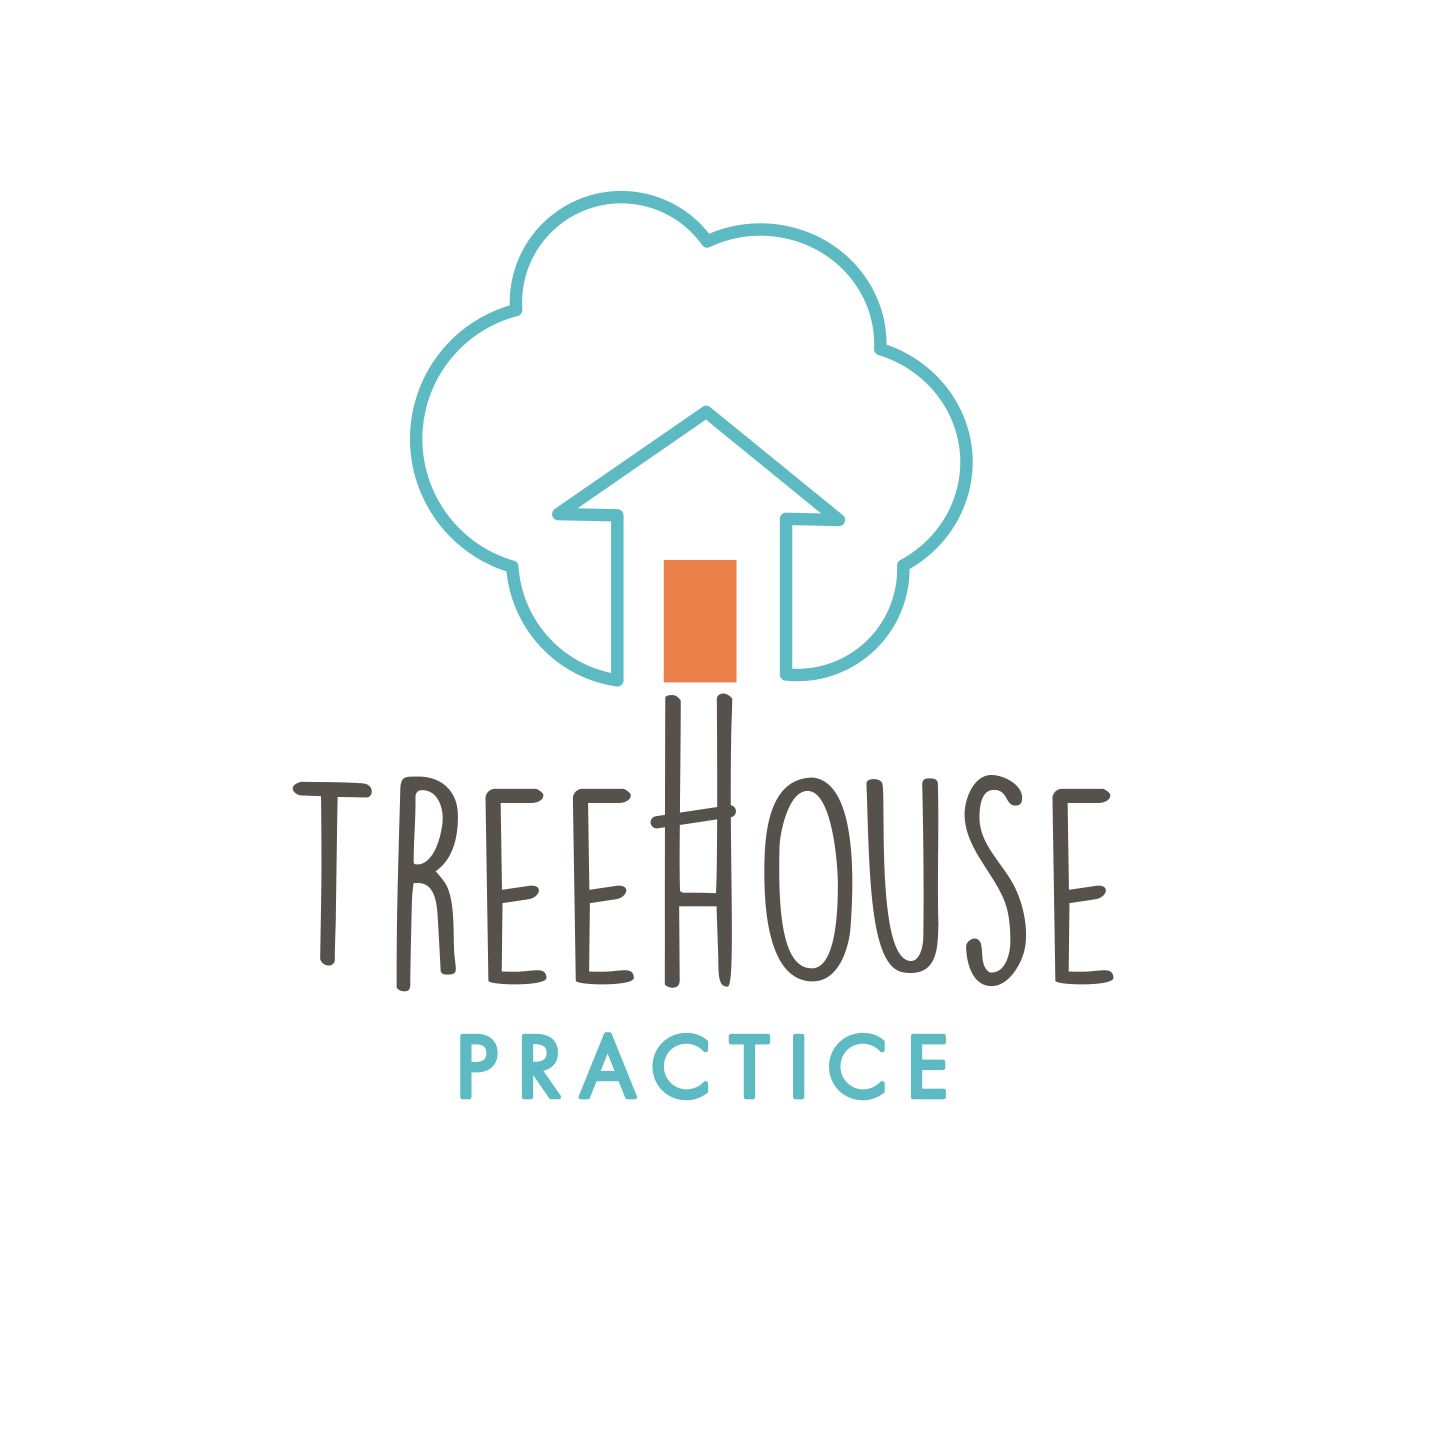 Treehouse Practice logo